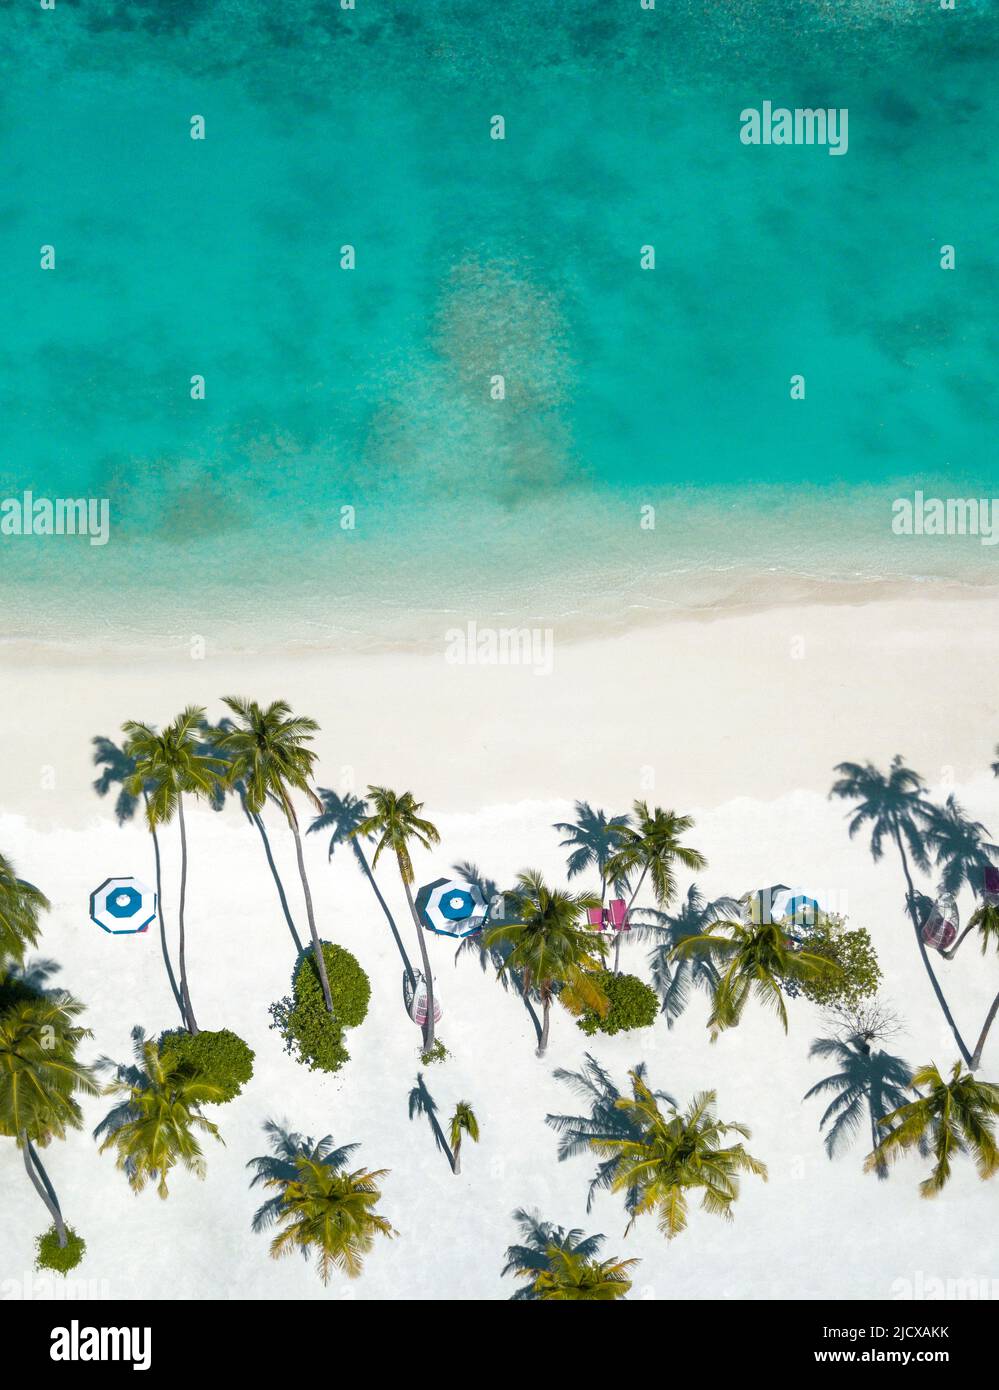 Vue aérienne d'une plage aux Maldives, Océan Indien, Asie Banque D'Images